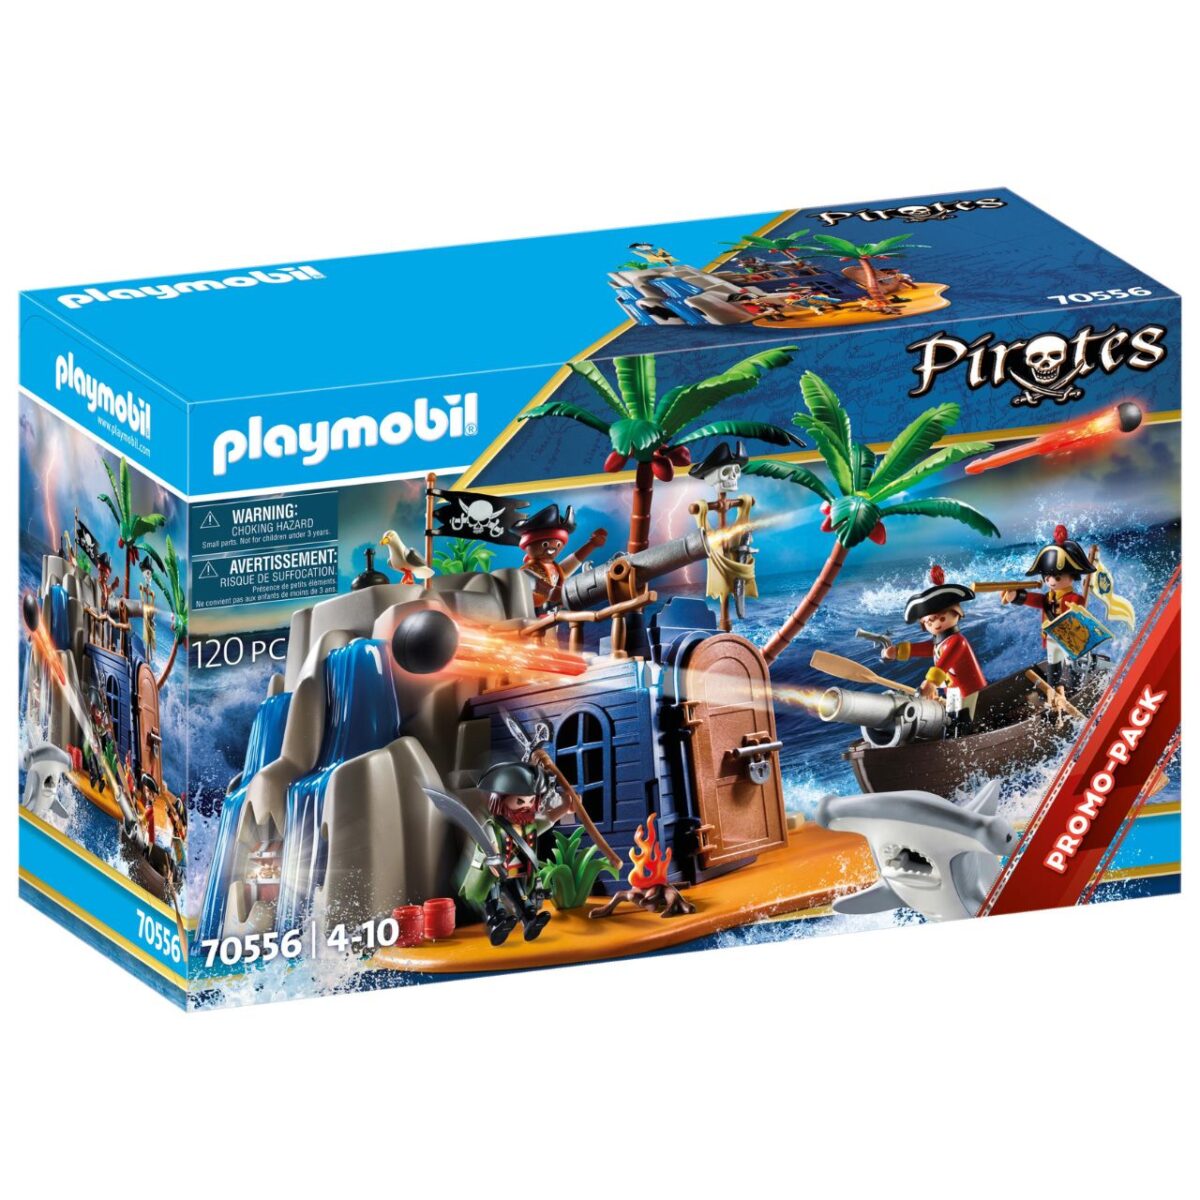 70556_playmobil_aldeghi